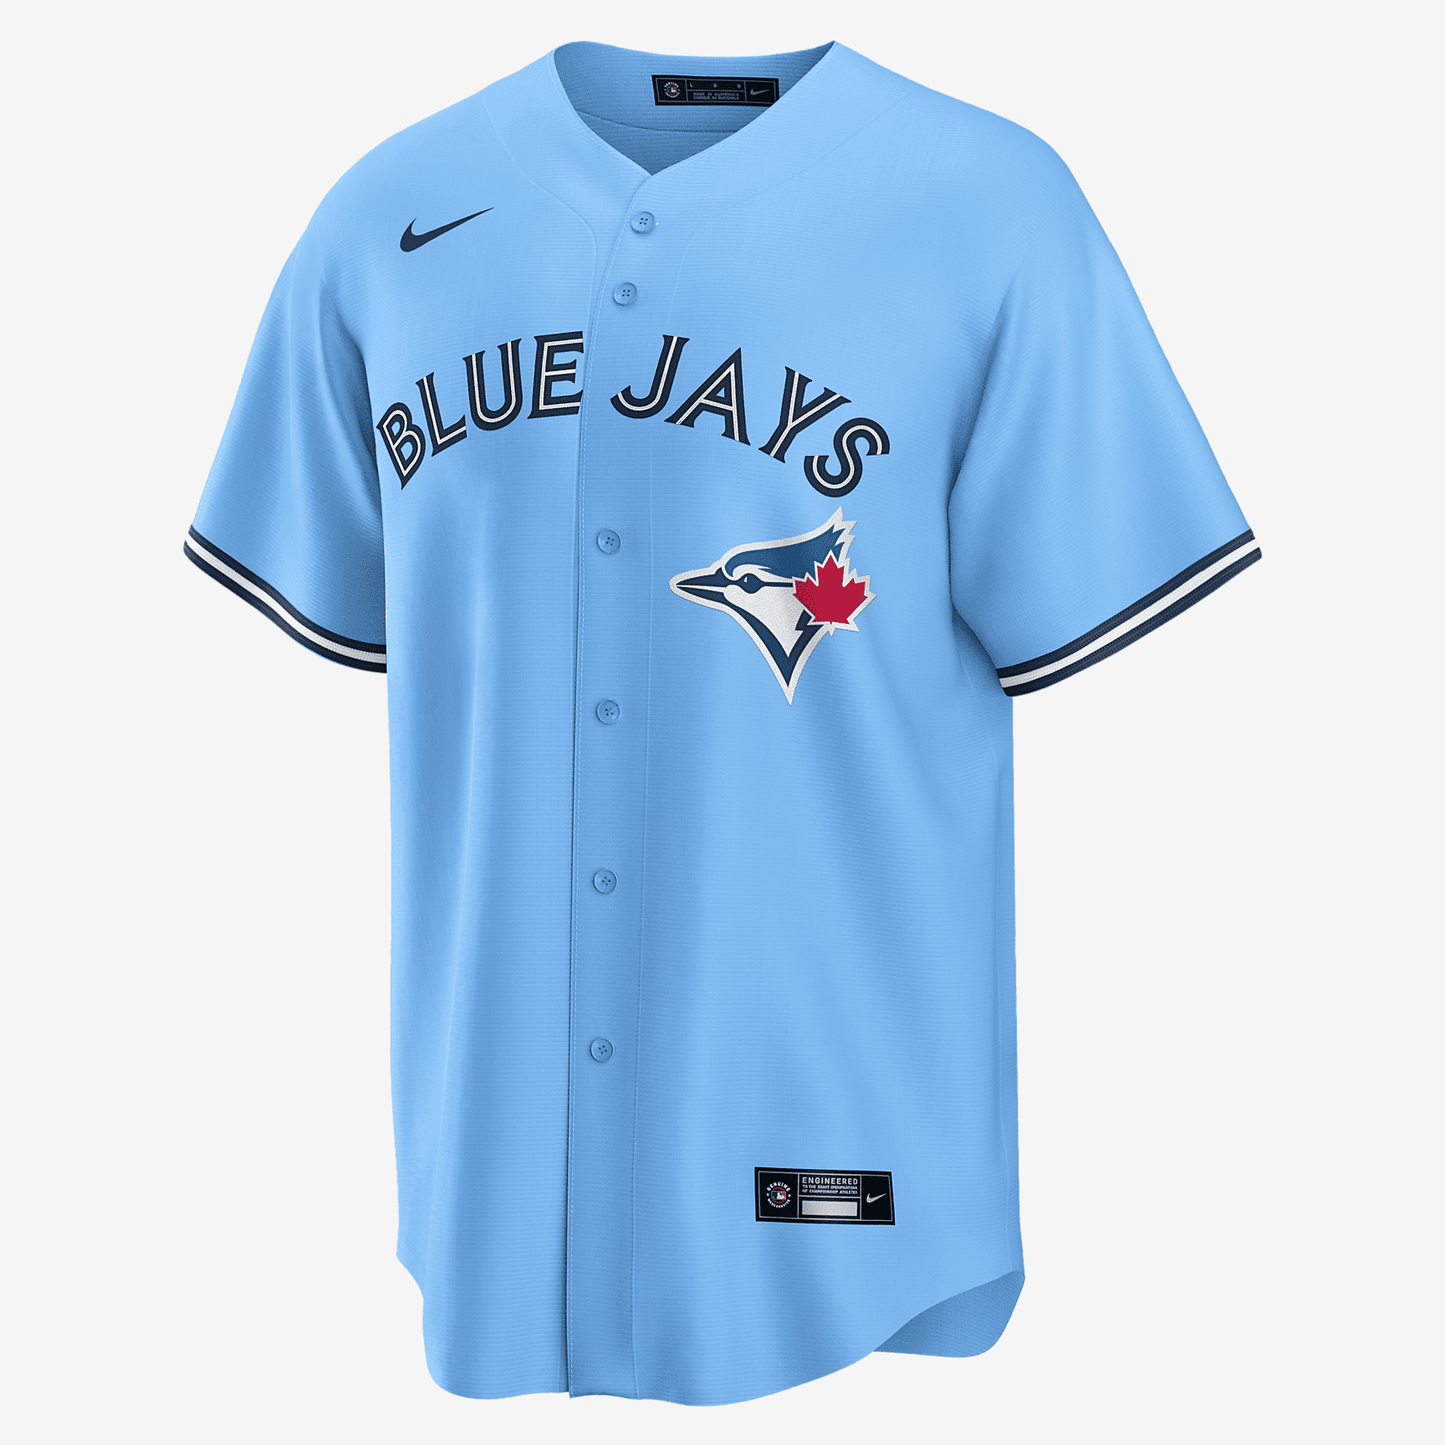 MLB Toronto Blue Jays (Vladimir Guerrero Jr.) Men's Replica Baseball Jersey - Powder Blue